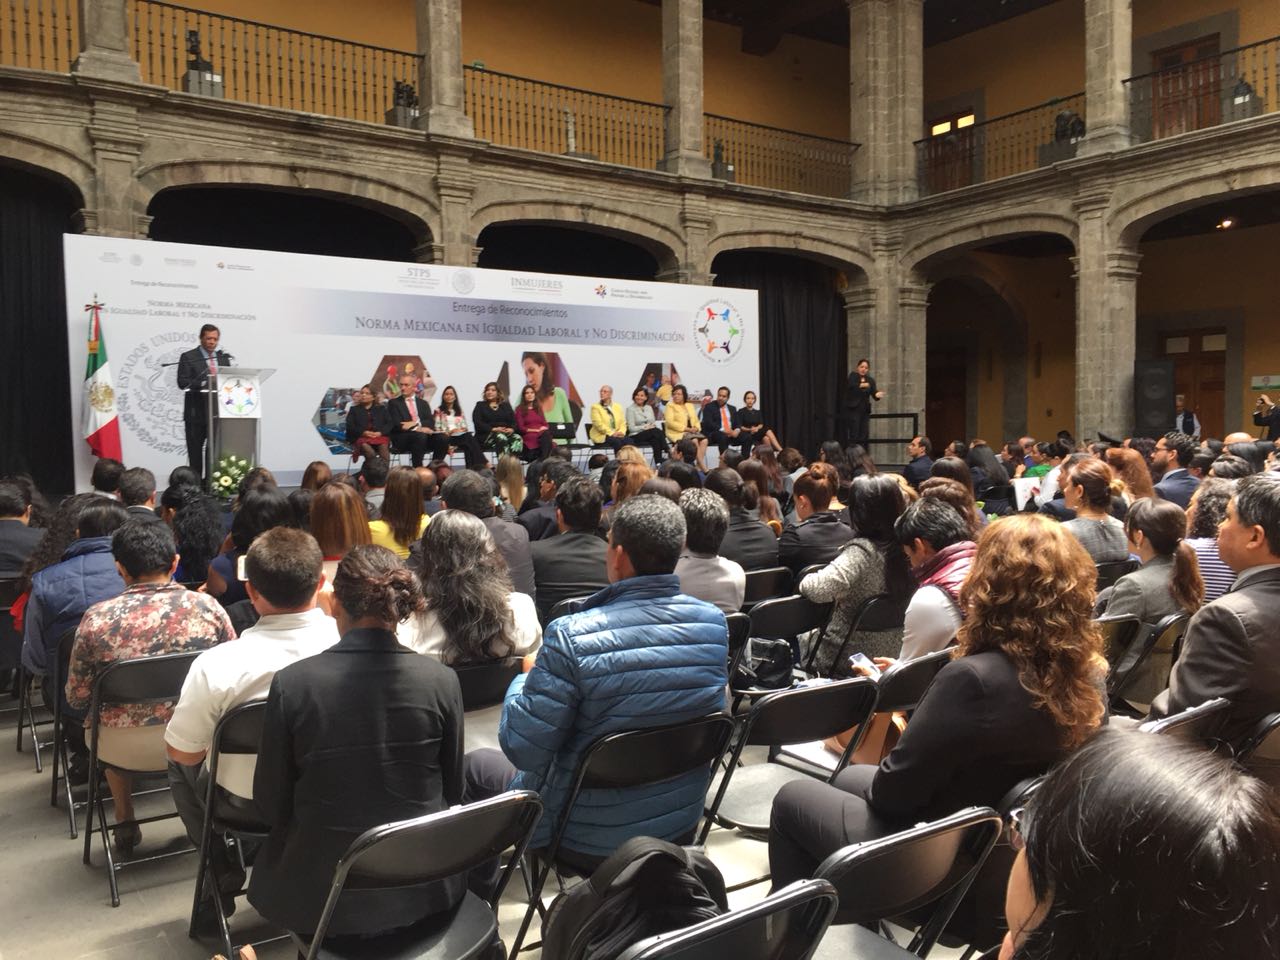 Foto panorámica de las y los asistentes en la Entrega de Reconocimiento de la Norma Mexicana en Igualdad Laboral y No Discriminación.